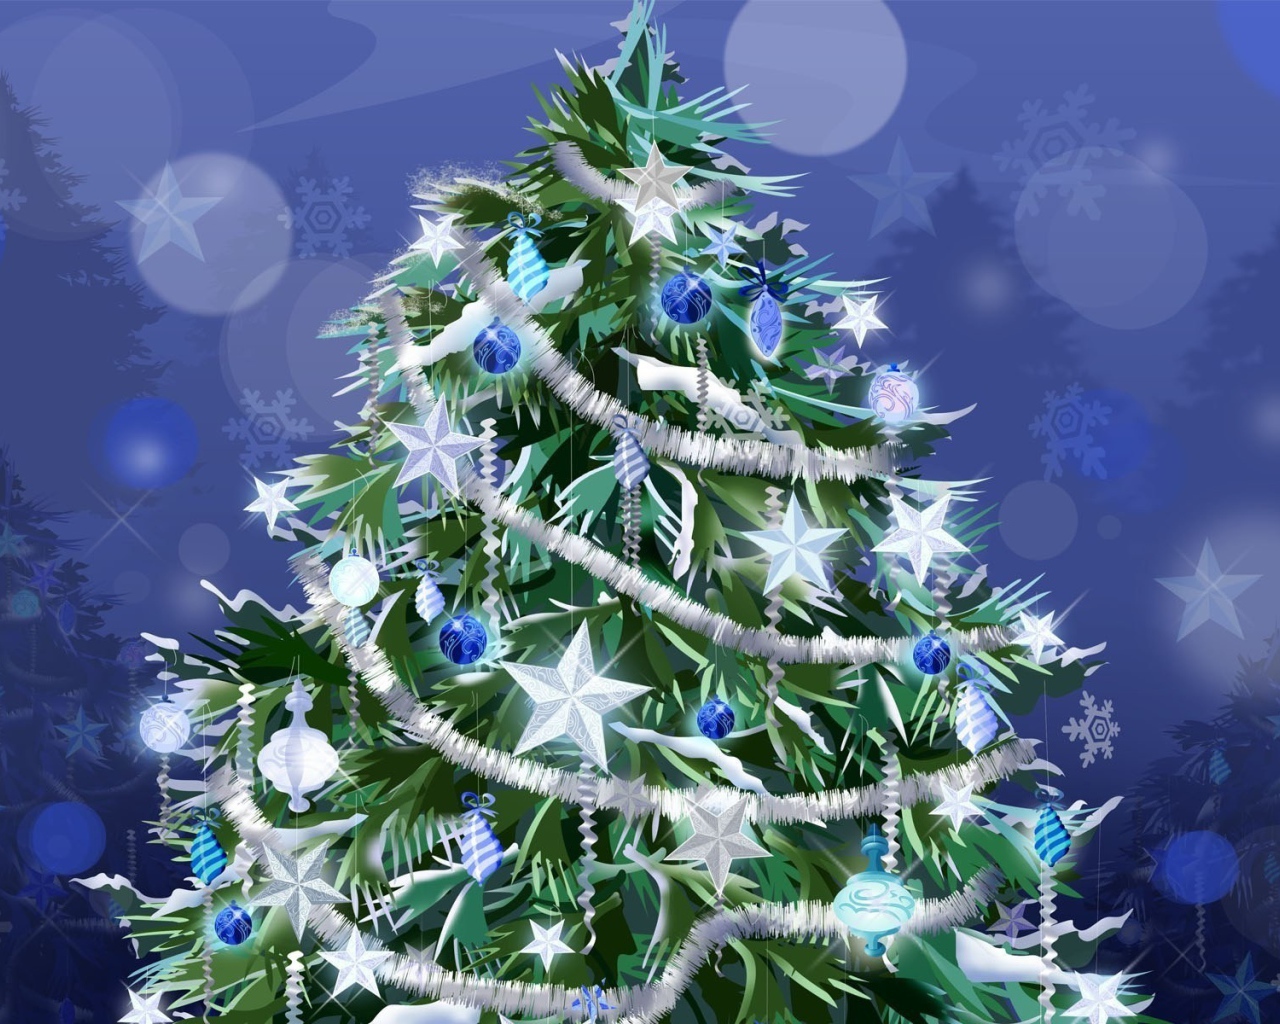 Новогодняя елка с белыми звездами 2014